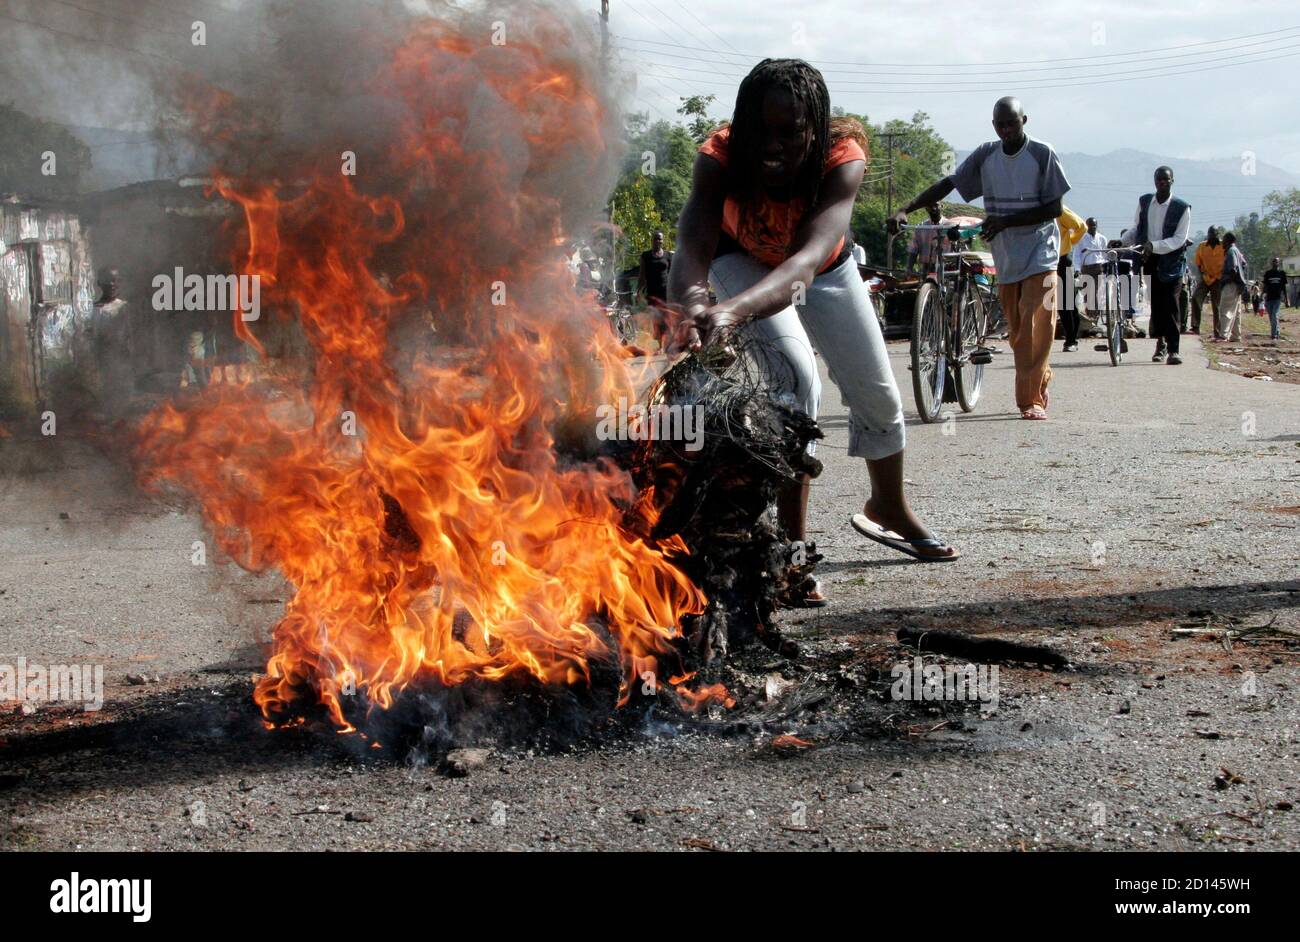 Un manifestante enciende una hoguera a lo largo de una carretera en la ciudad occidental de Kisumu el 16 de enero de 2008. Los jóvenes levantaron barricadas, los comerciantes clavaron las ventanas y la policía antidisturbios de Kenia vigiló las calles antes de las protestas de la oposición nacional previstas para el miércoles contra la reelección del presidente Mwai Kibaki. REUTERS/Thomas Mukoya (KENIA) Foto de stock